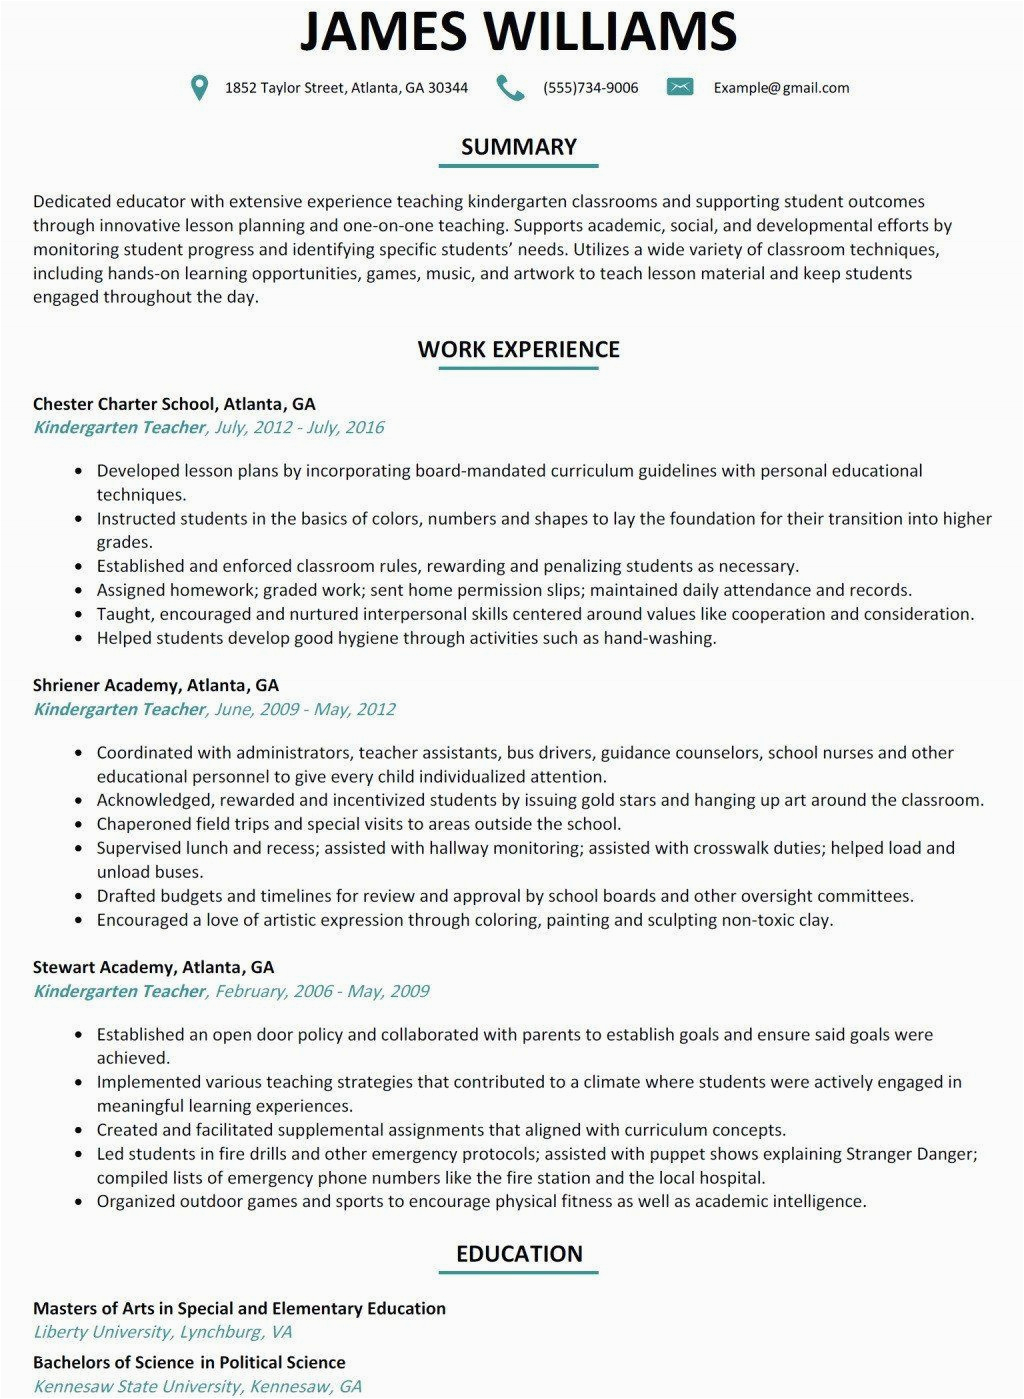 Sample Of Objectives In Resume for Teachers Resume Objectives for Teachers Elementary School